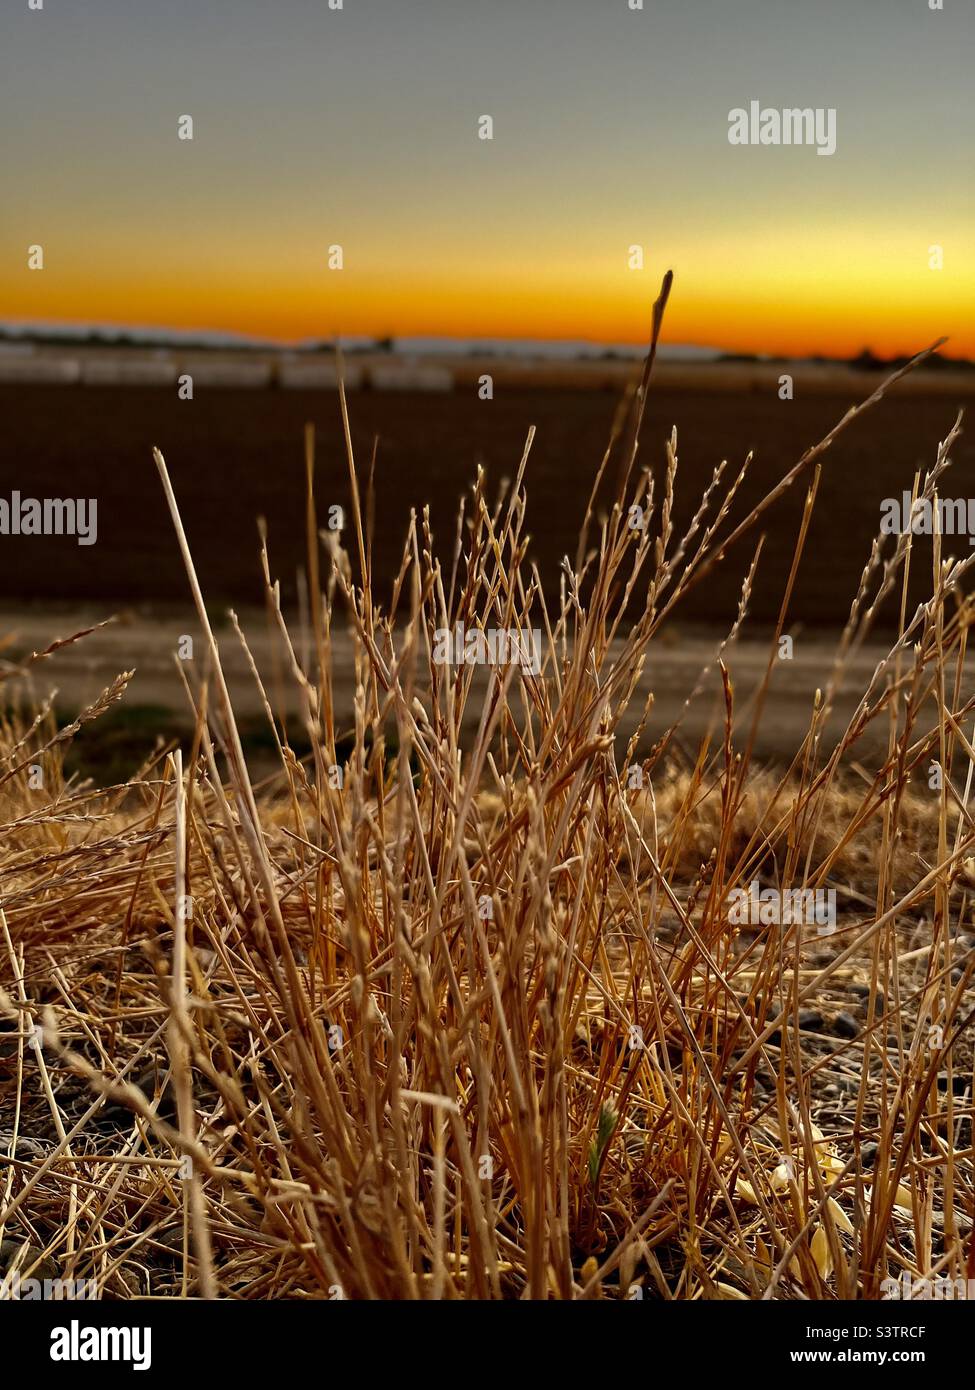 Einzigartiges braunes Gras mit Porträtmodus auf dem iPhone. Wunderschöner Sonnenuntergang in Kalifornien im Hintergrund. Stockfoto